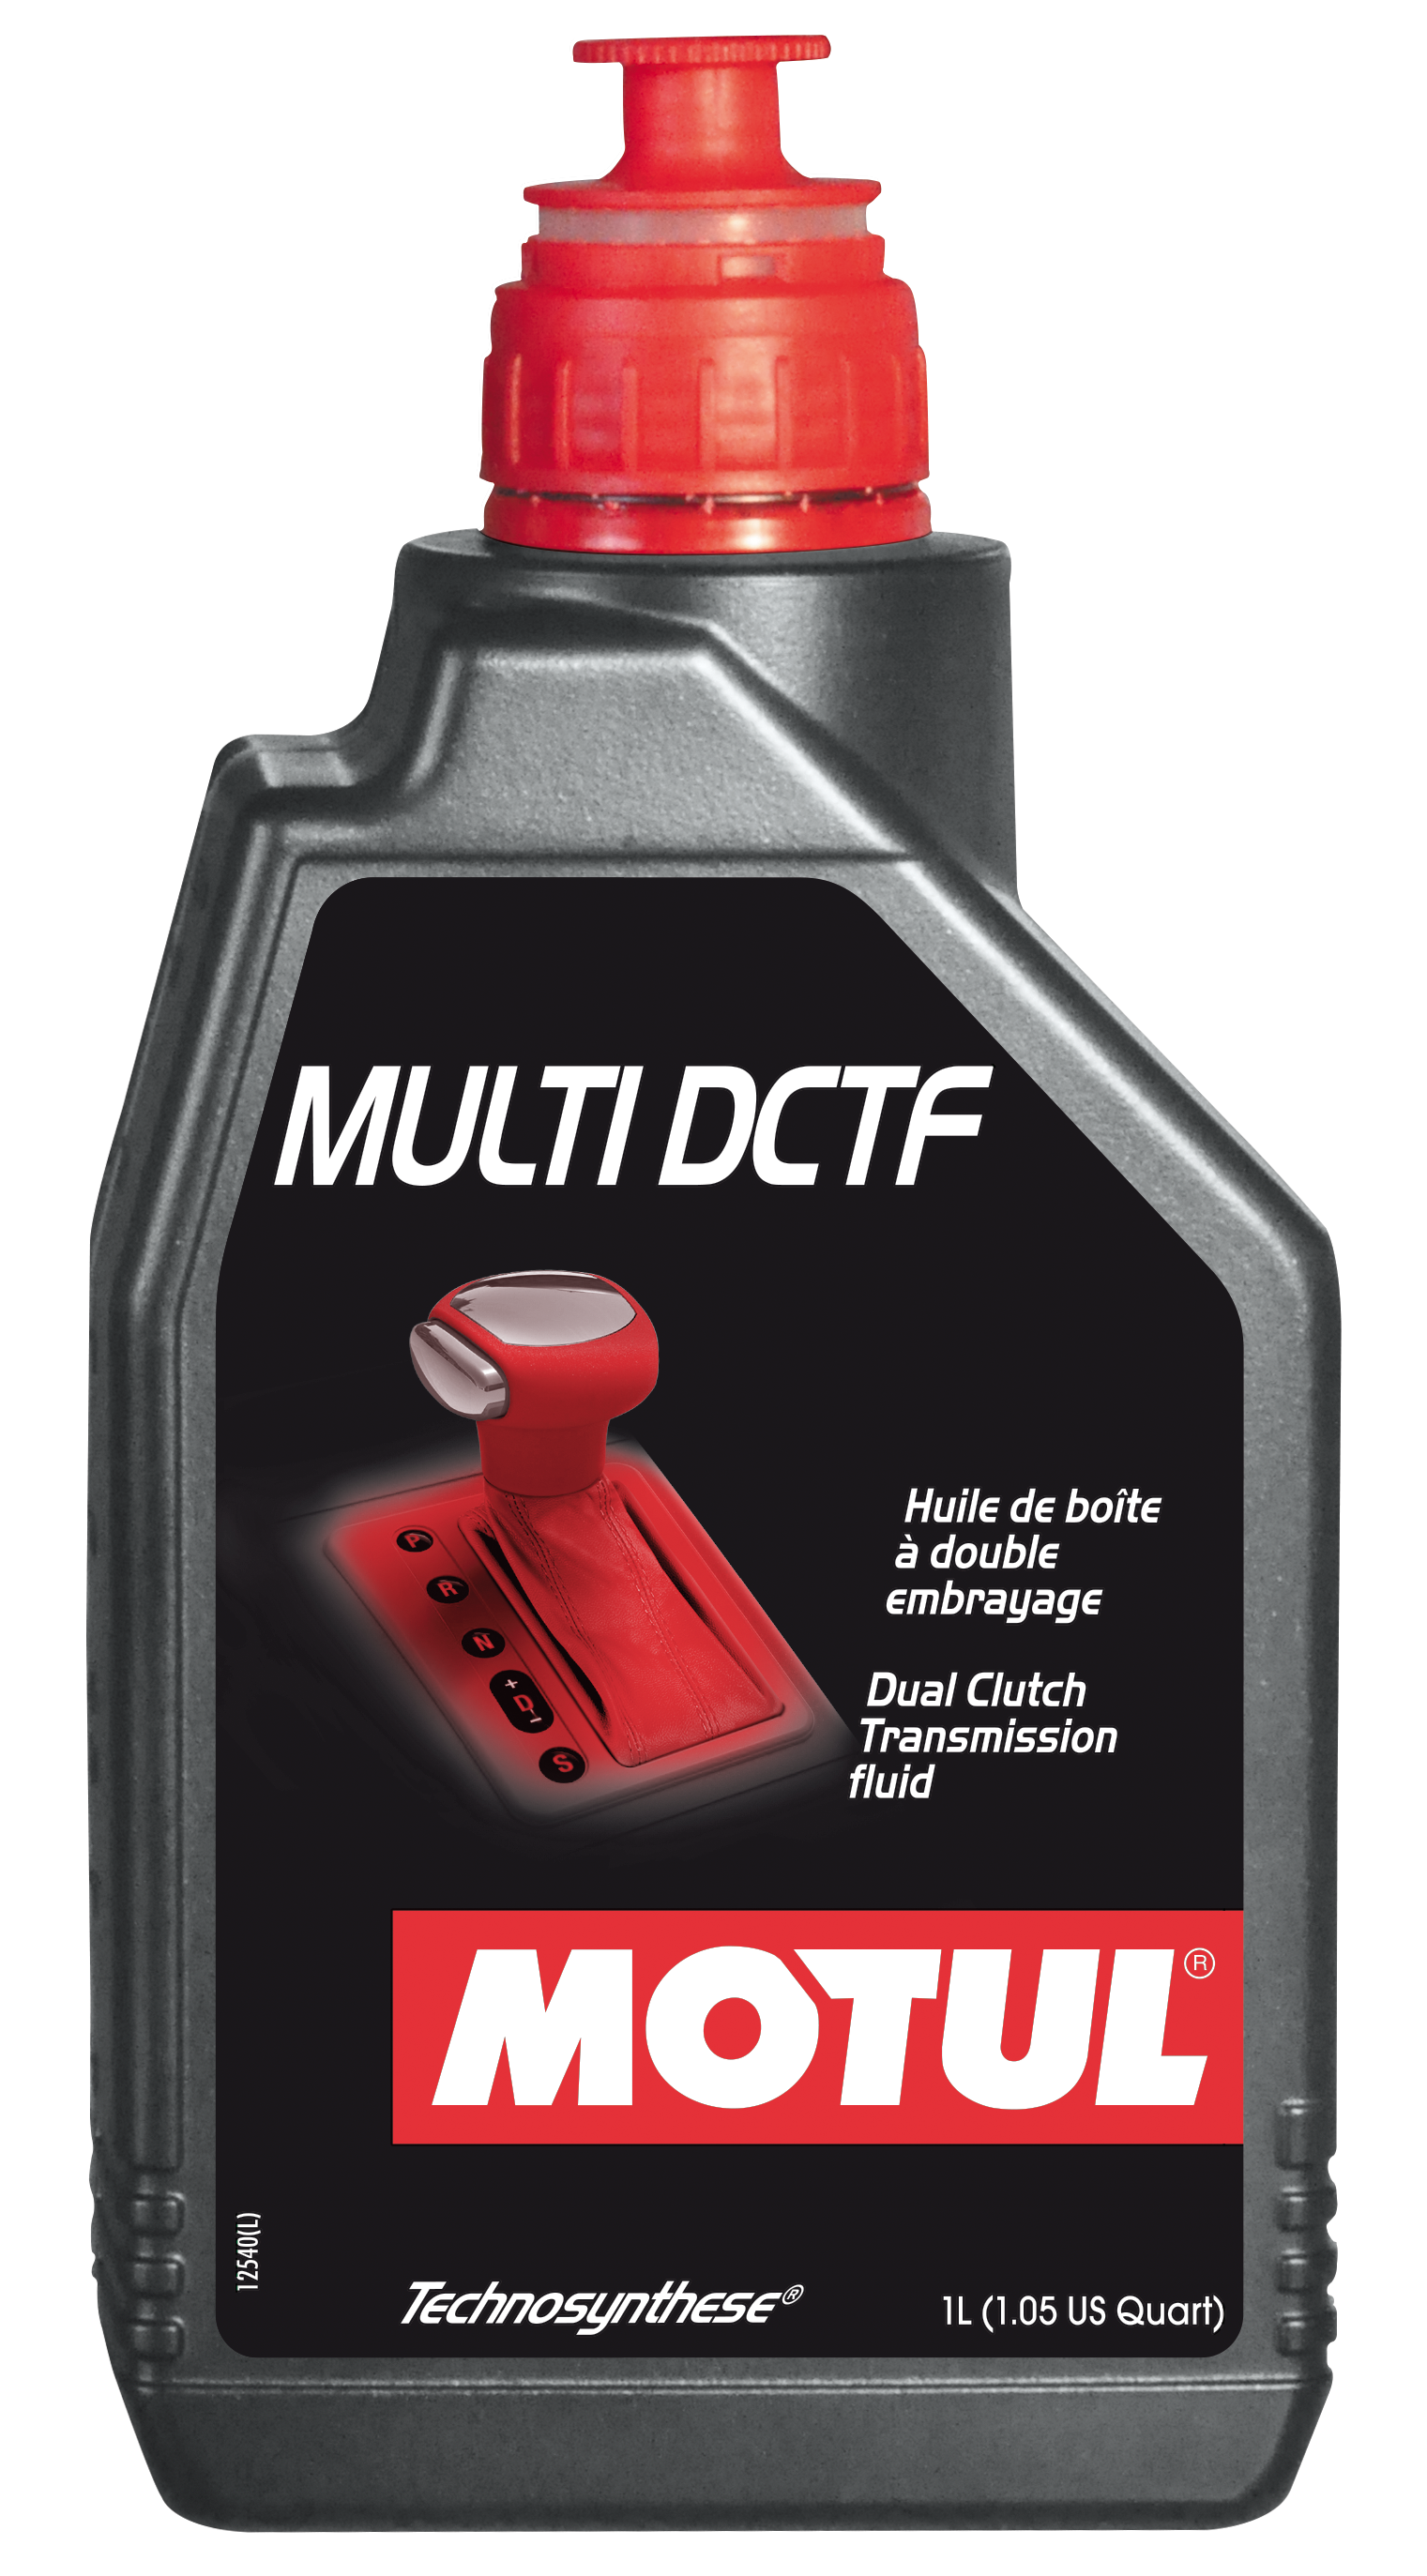 MOTUL MULTI DCTF - 1L - Technosynthese Transmission fluid